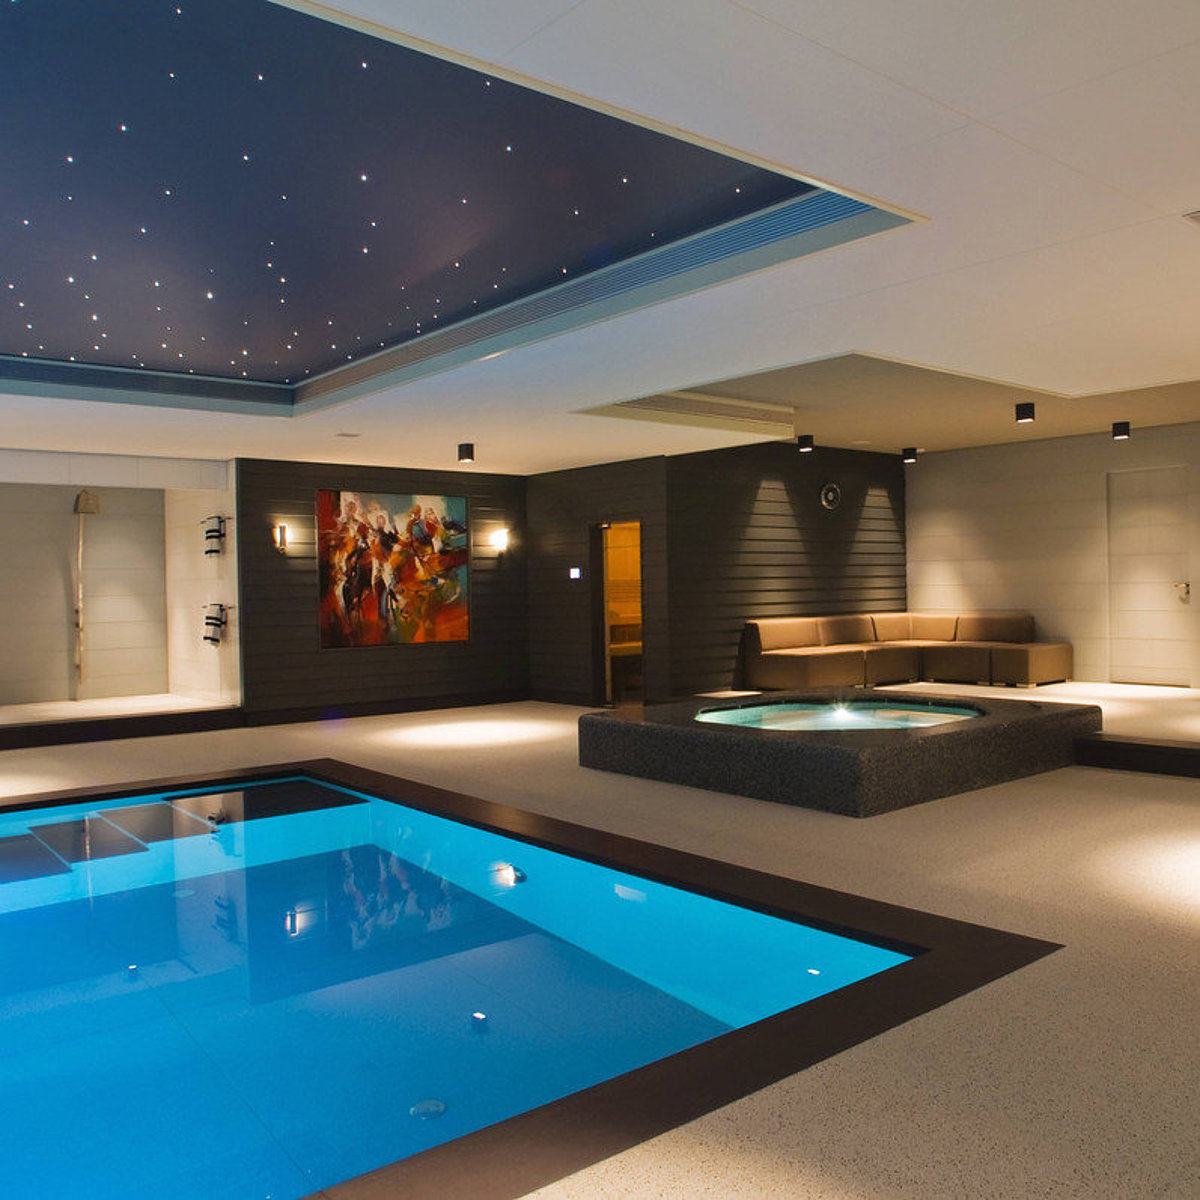 Ein Wellnessbereich mit Pool, Whirlpool, Duschbereich und Beleuchtung – inklusive Sternenhimmel an der Decke.